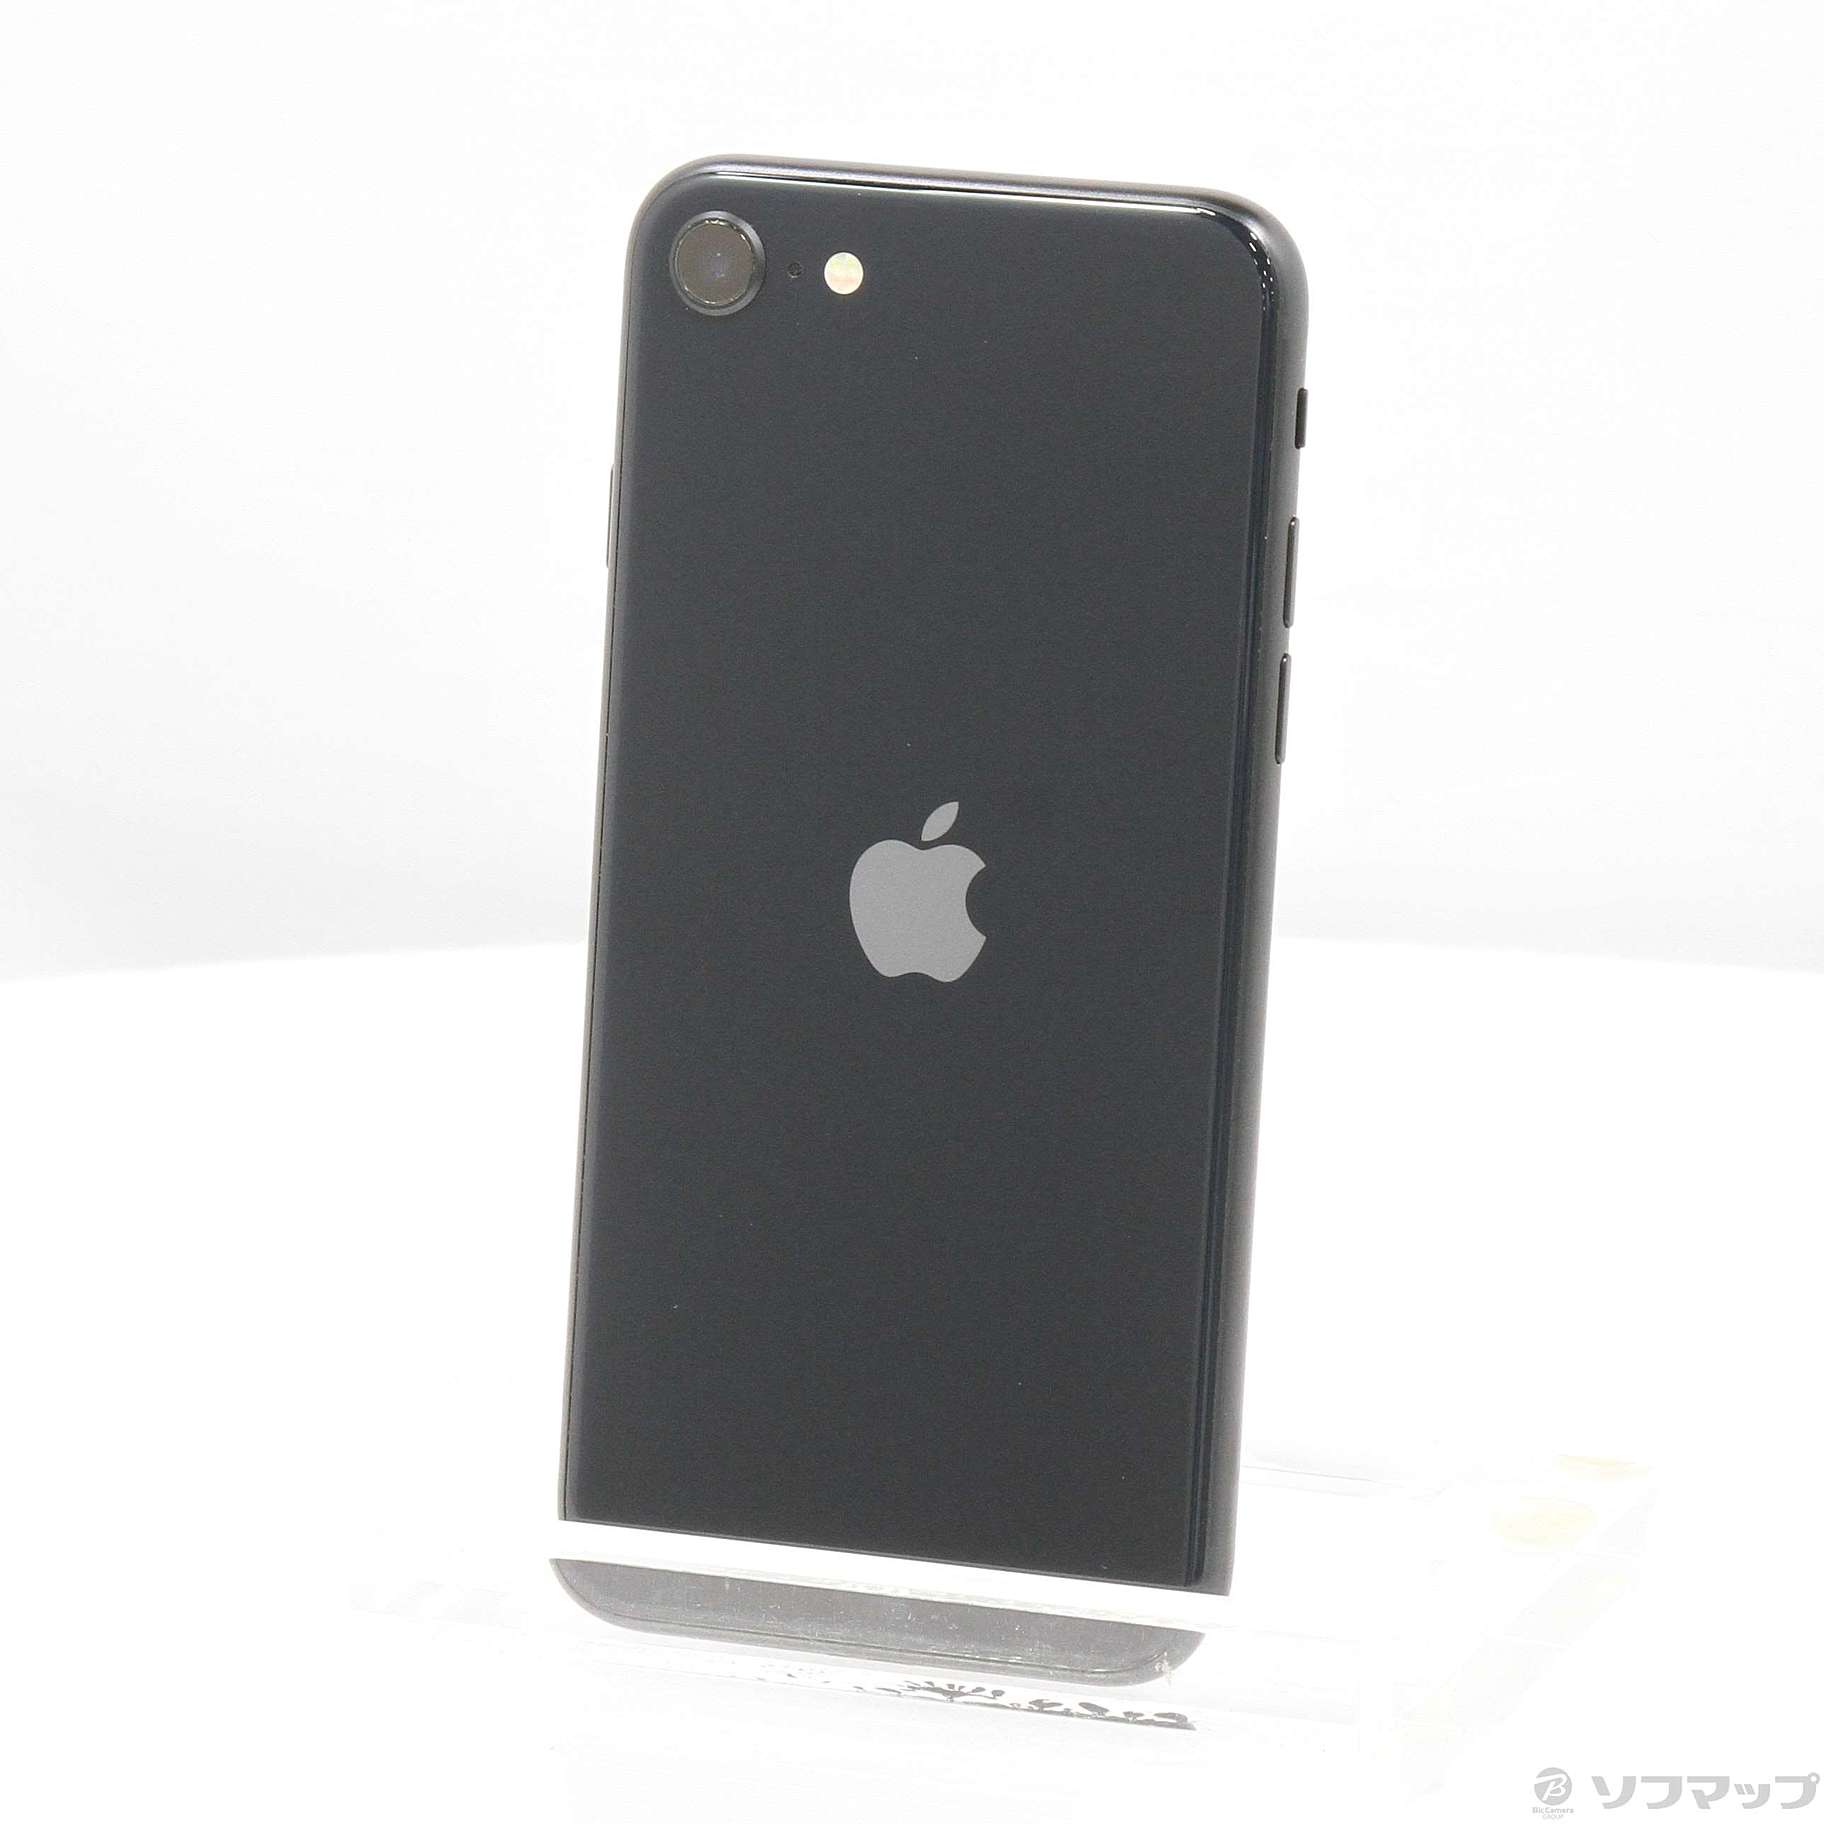 Apple iPhone SE 第3世代 128GB  ミッドナイト